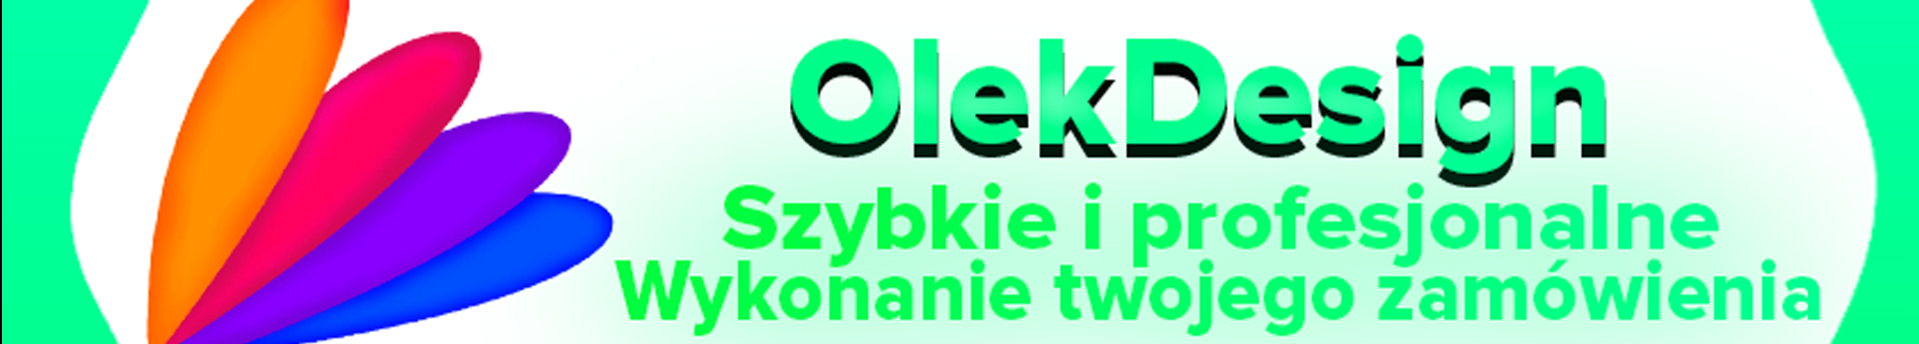 Olek Design's profile banner